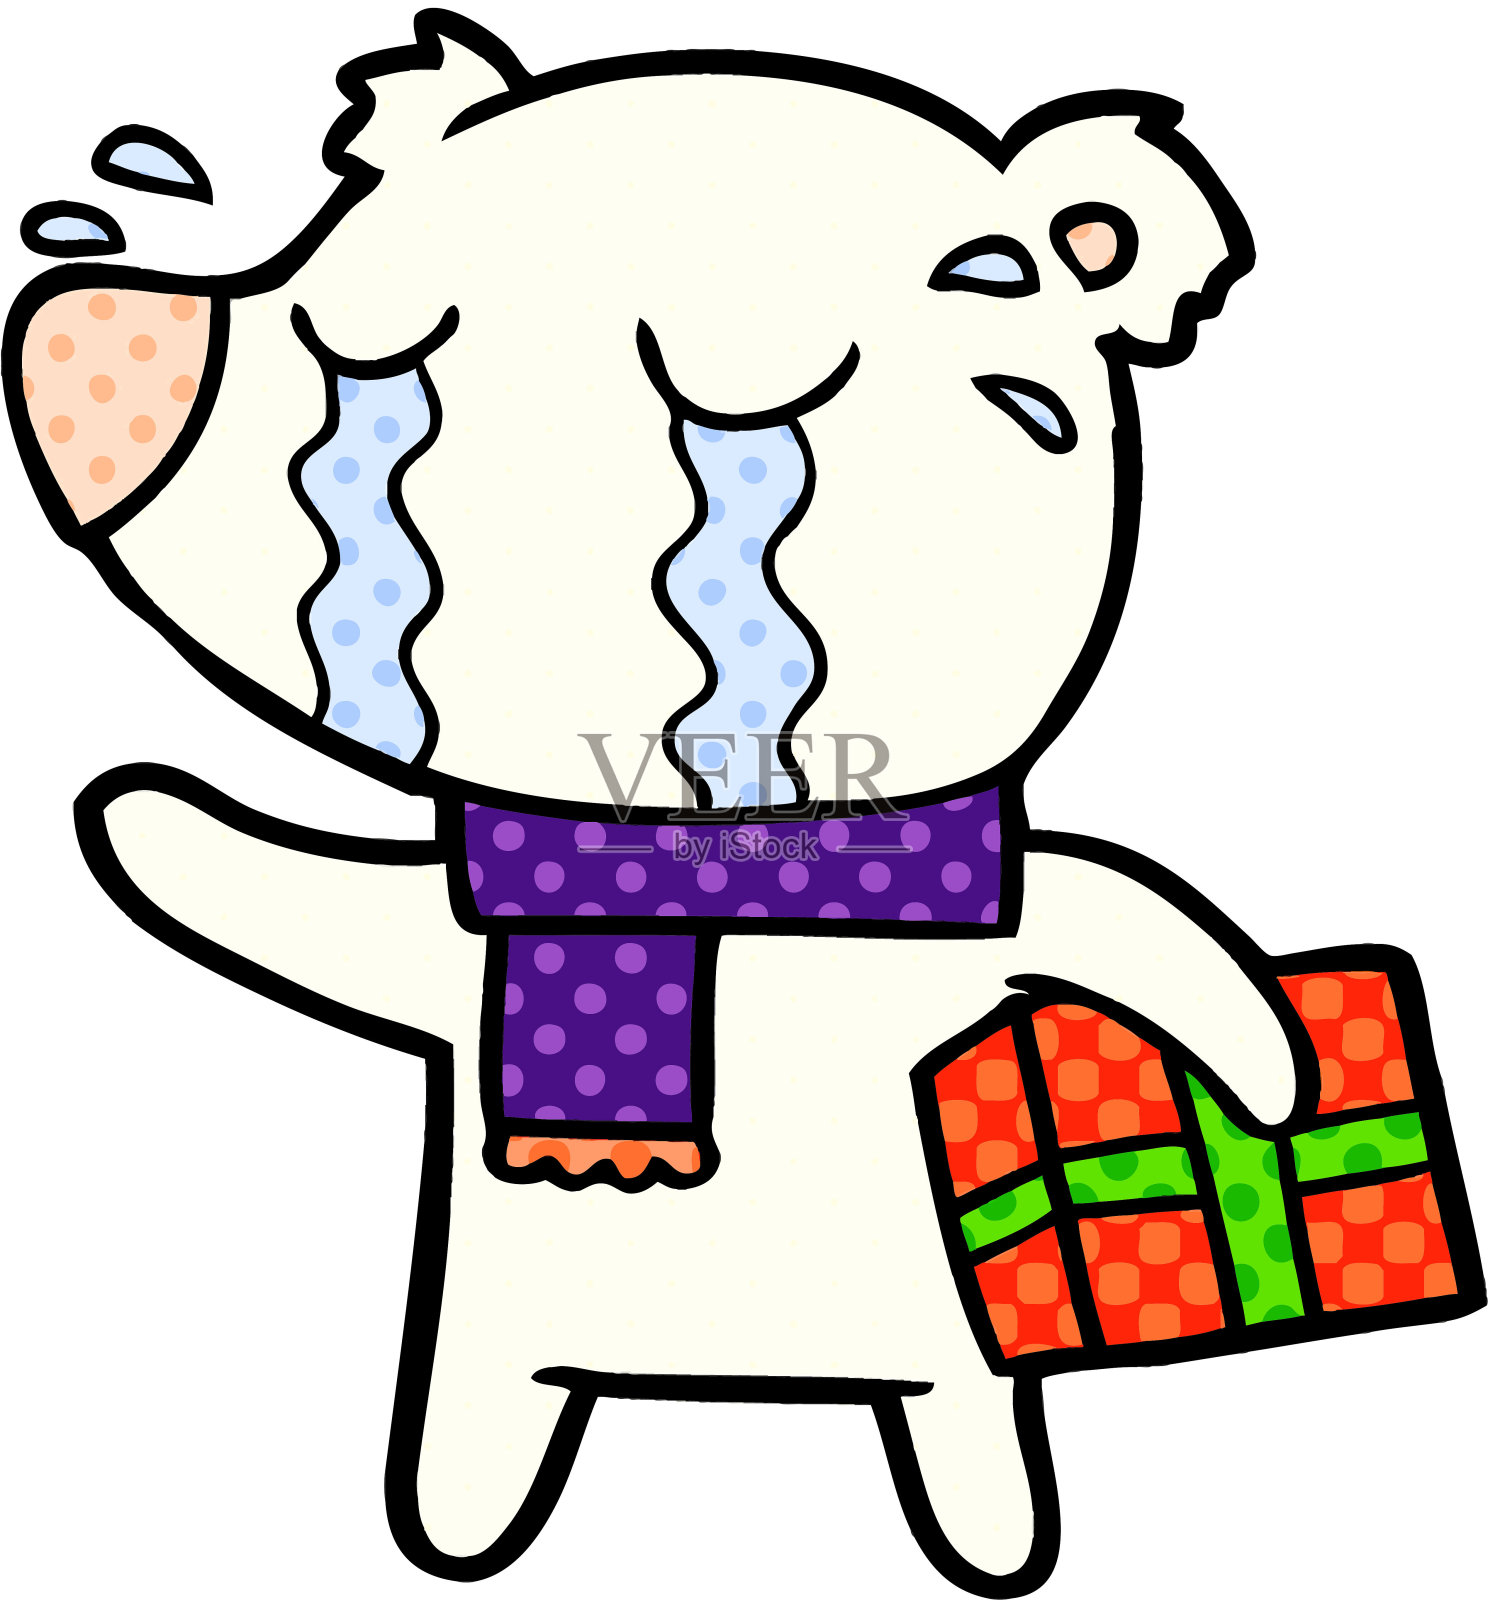 一只哭泣的卡通熊在跳悲伤的舞 向量例证. 插画 包括有 徒手画, 贴纸, 标签, 不快乐, 例证, 艺术 - 151138122